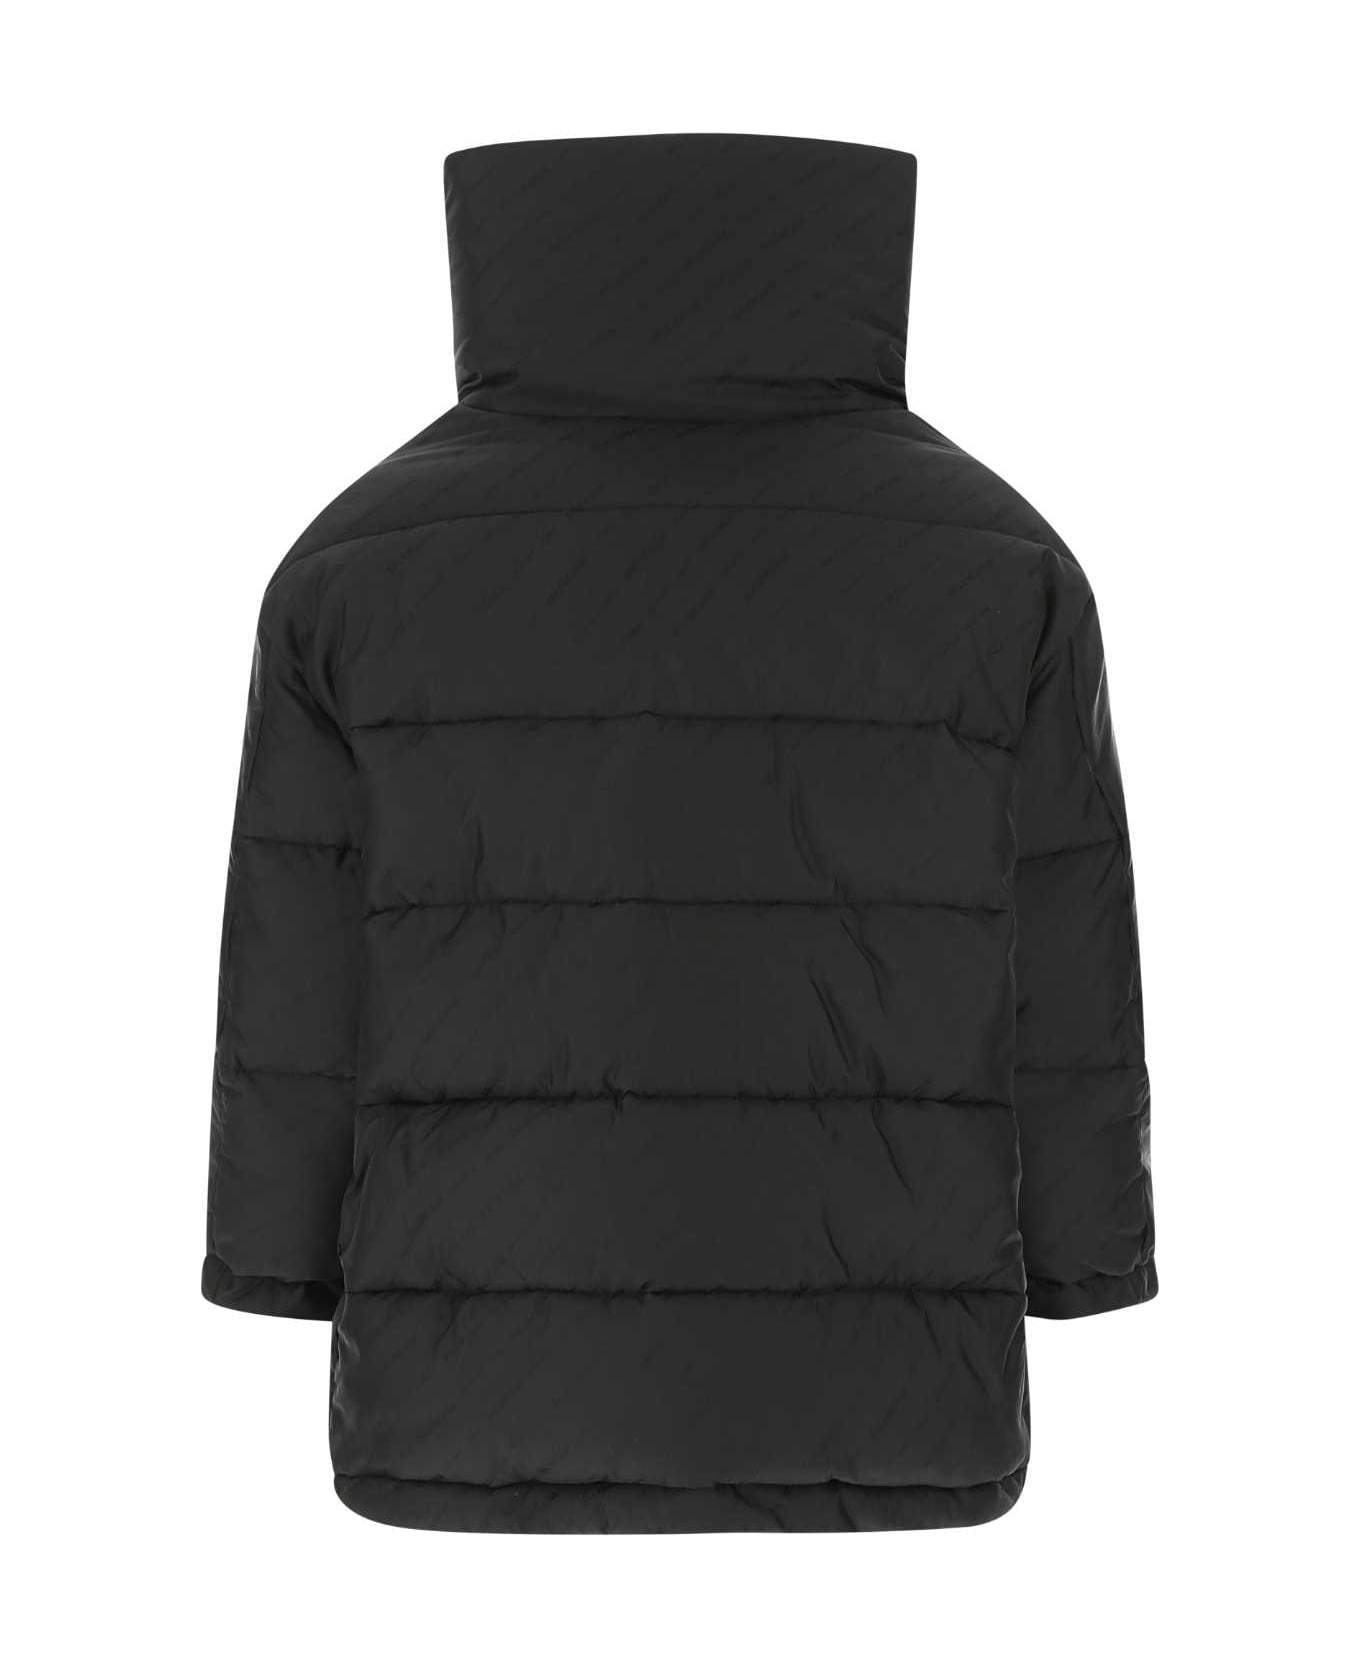 Balenciaga Black Nylon Padded Jacket - 1000